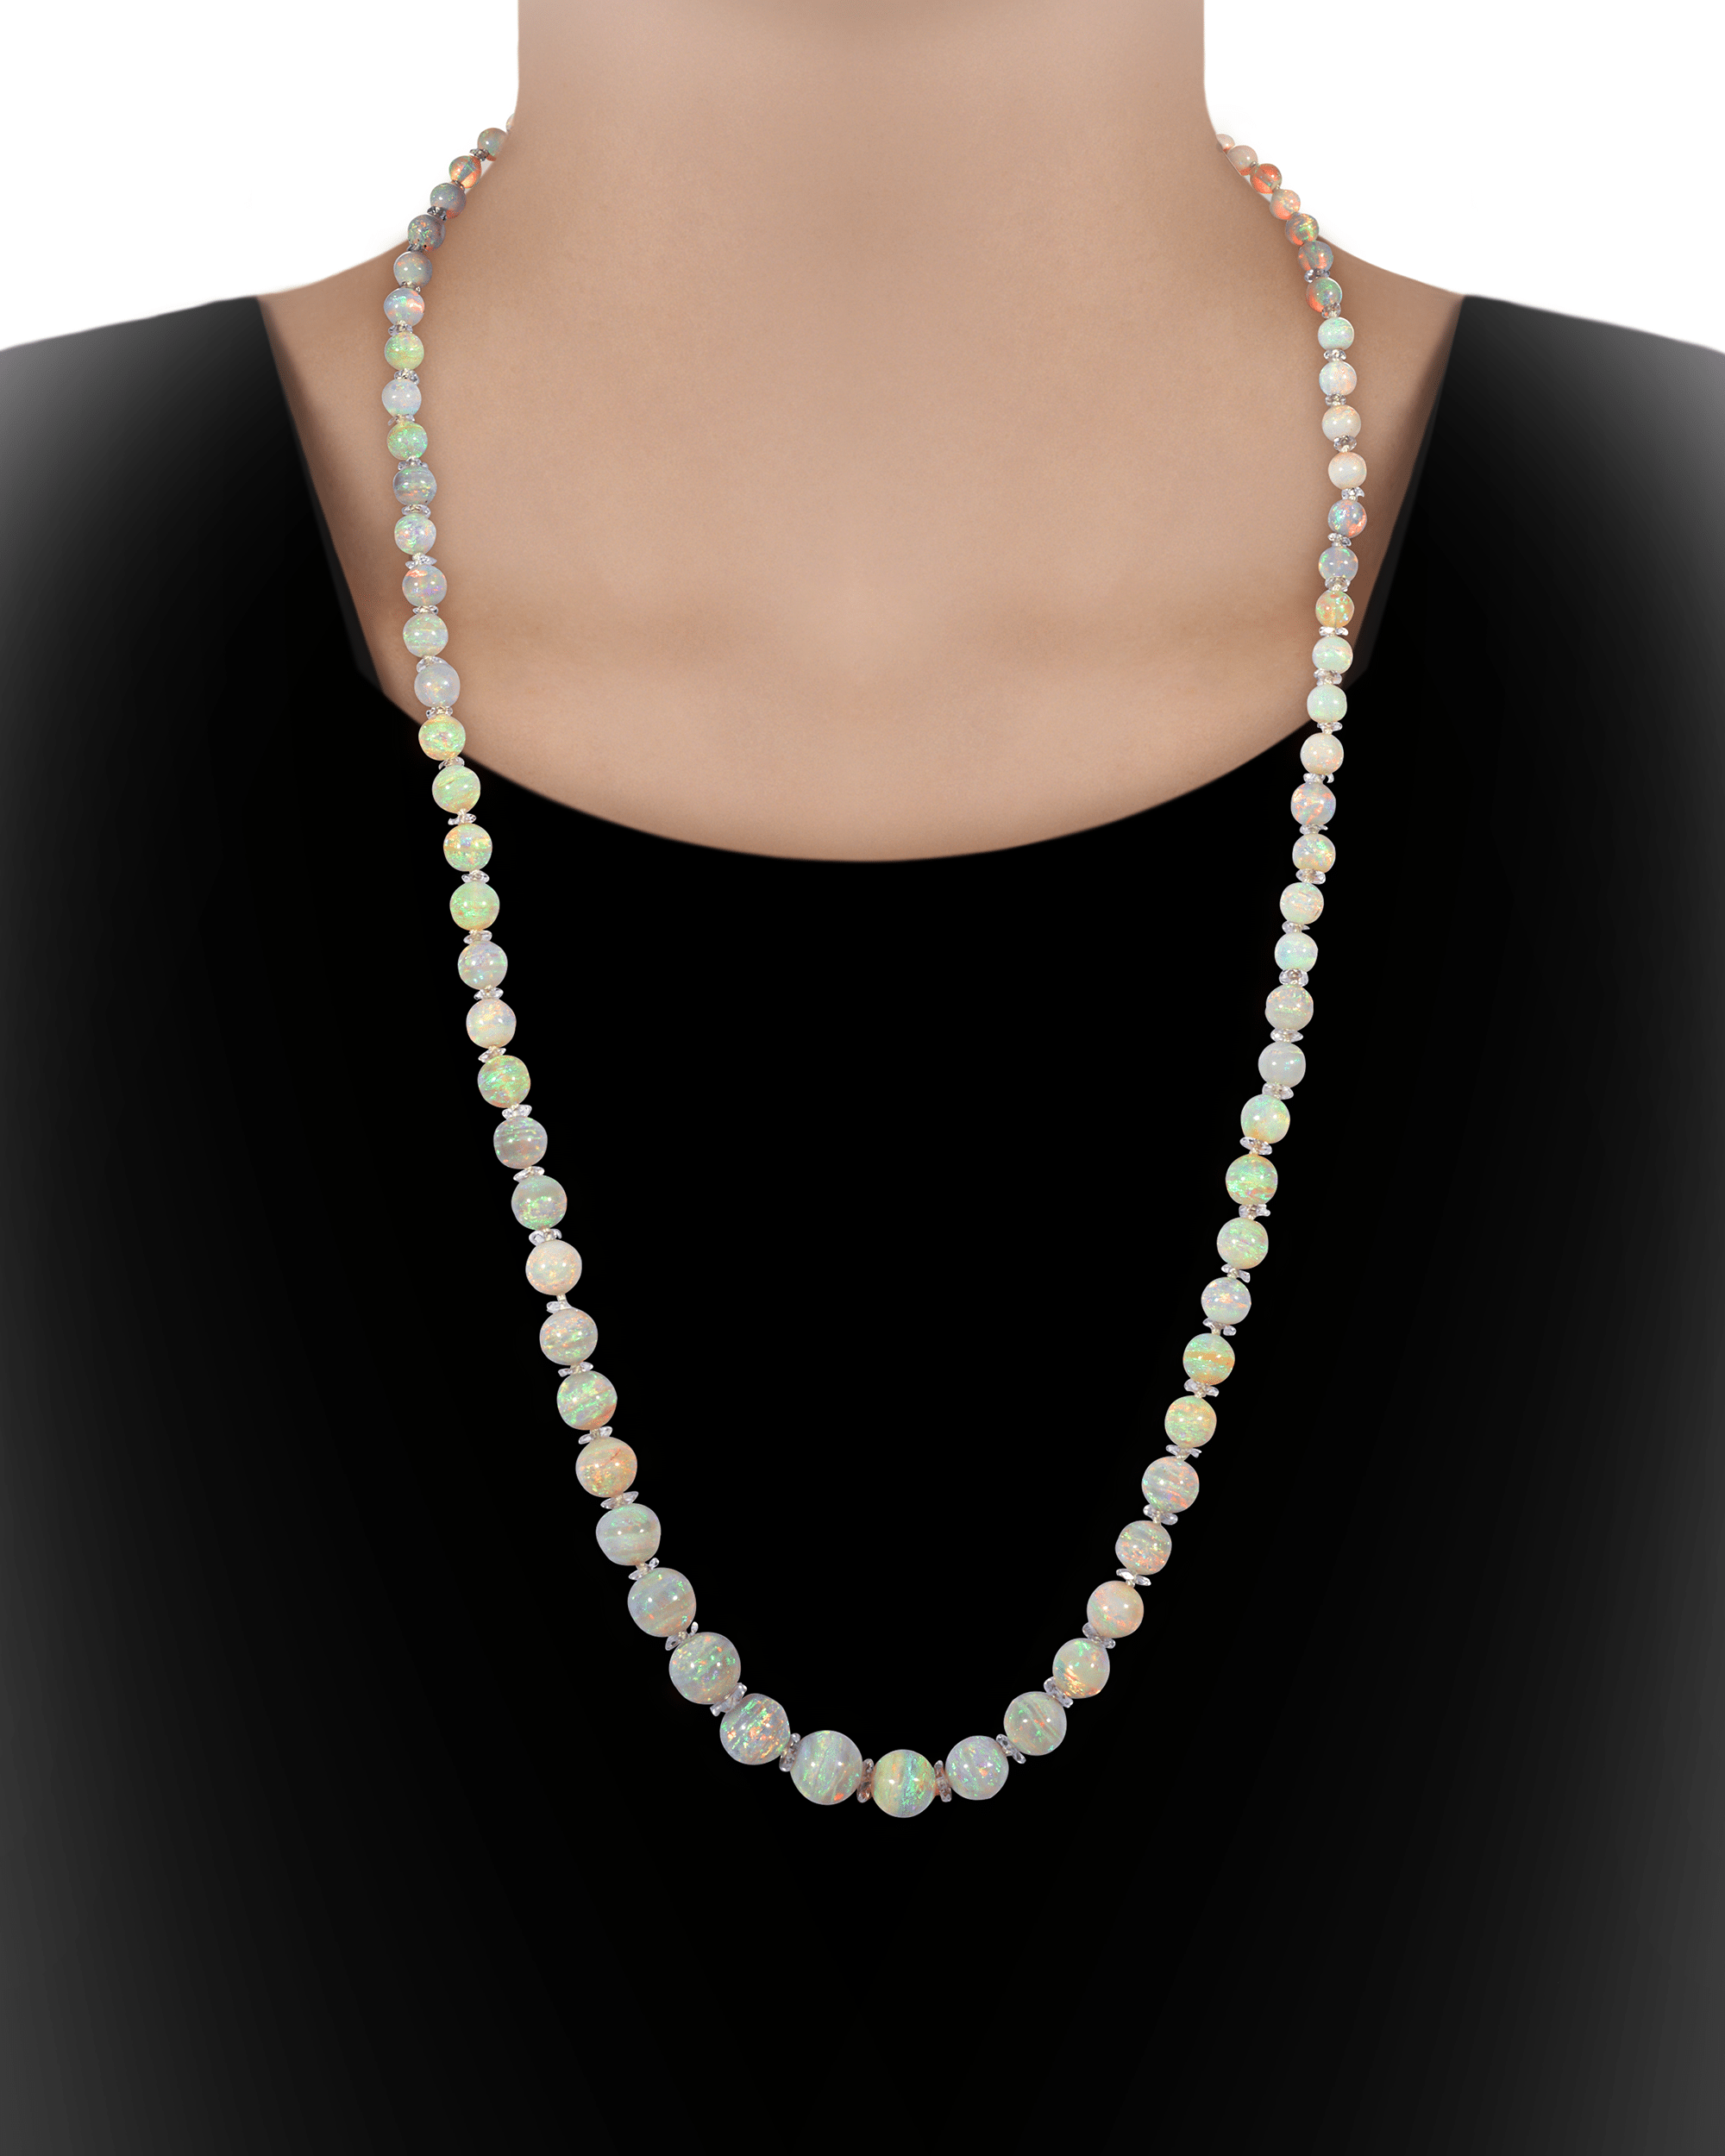 Beautiful rock crystal rondelles separate each opal bead